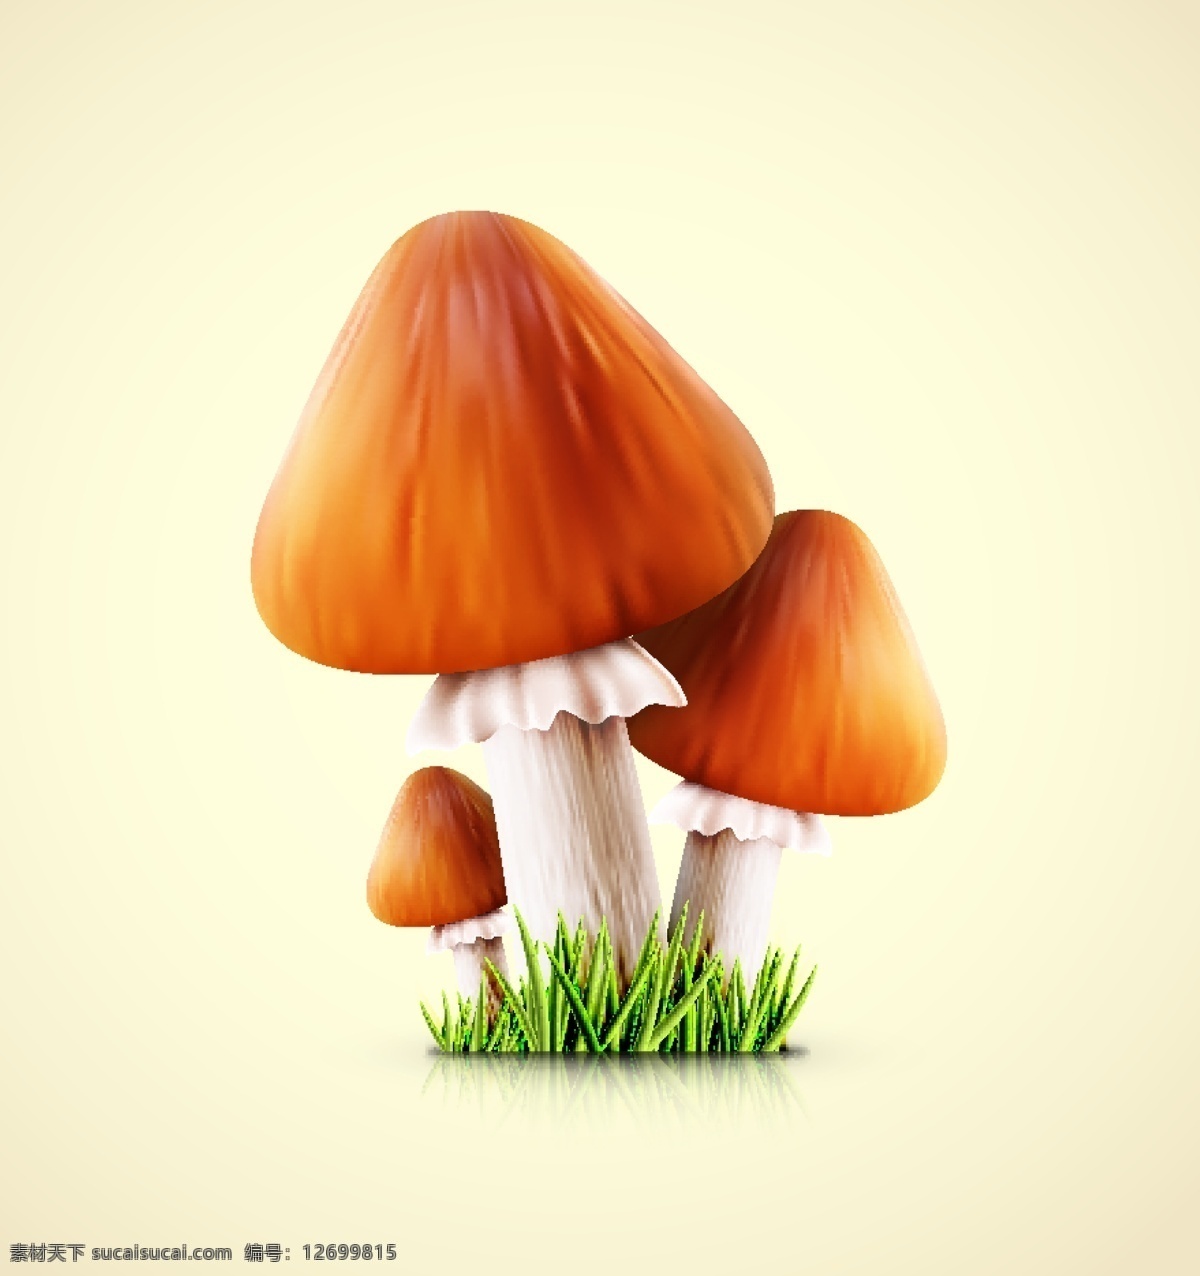 蘑菇 蔬菜 食用菌 香菇 手绘 美食 食材 鲜美 可口 新鲜 食物原料 餐饮美食 生物世界 矢量